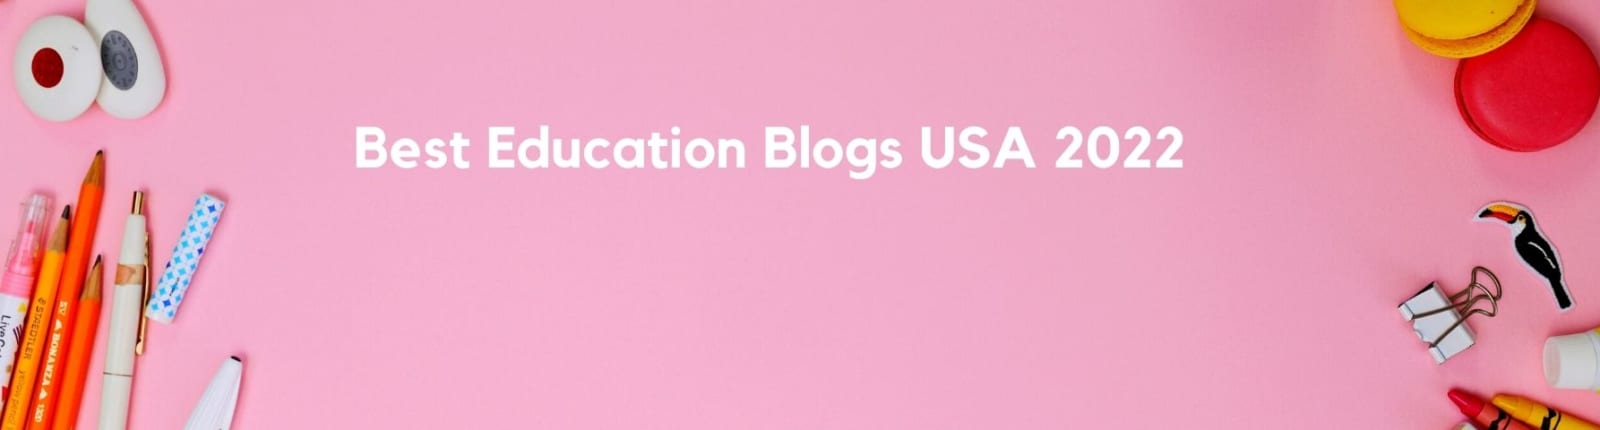 Best Education Blogs 2022 USA - Twinkl